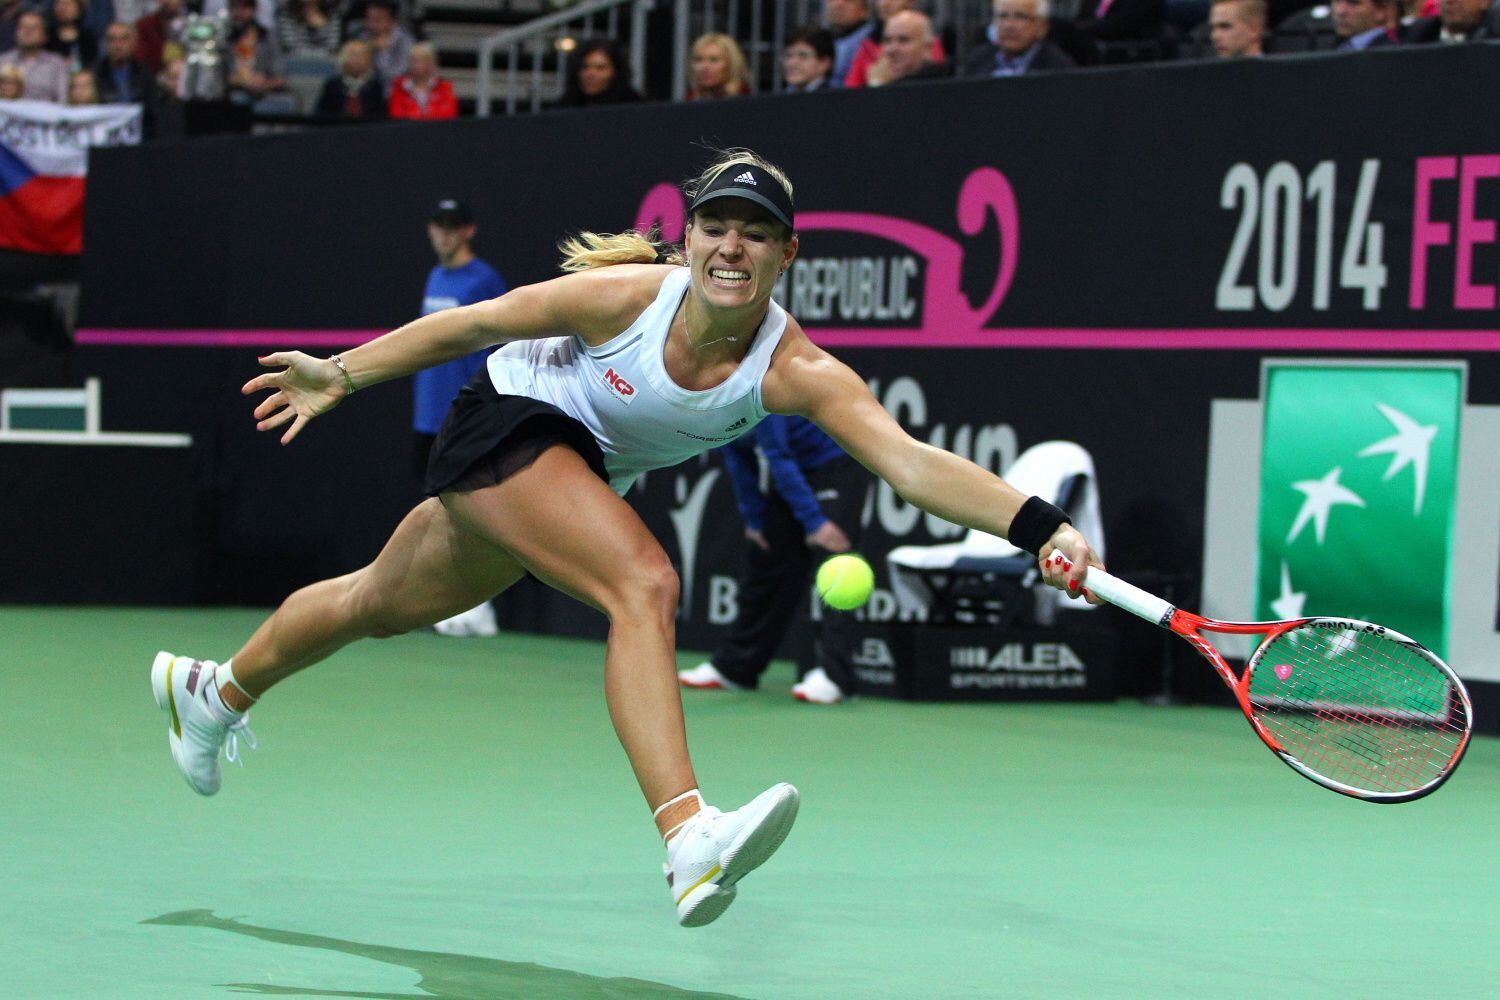 Finále Fed Cupu 2014: Angelique Kerberová v zápase s Lucii Šafářovou